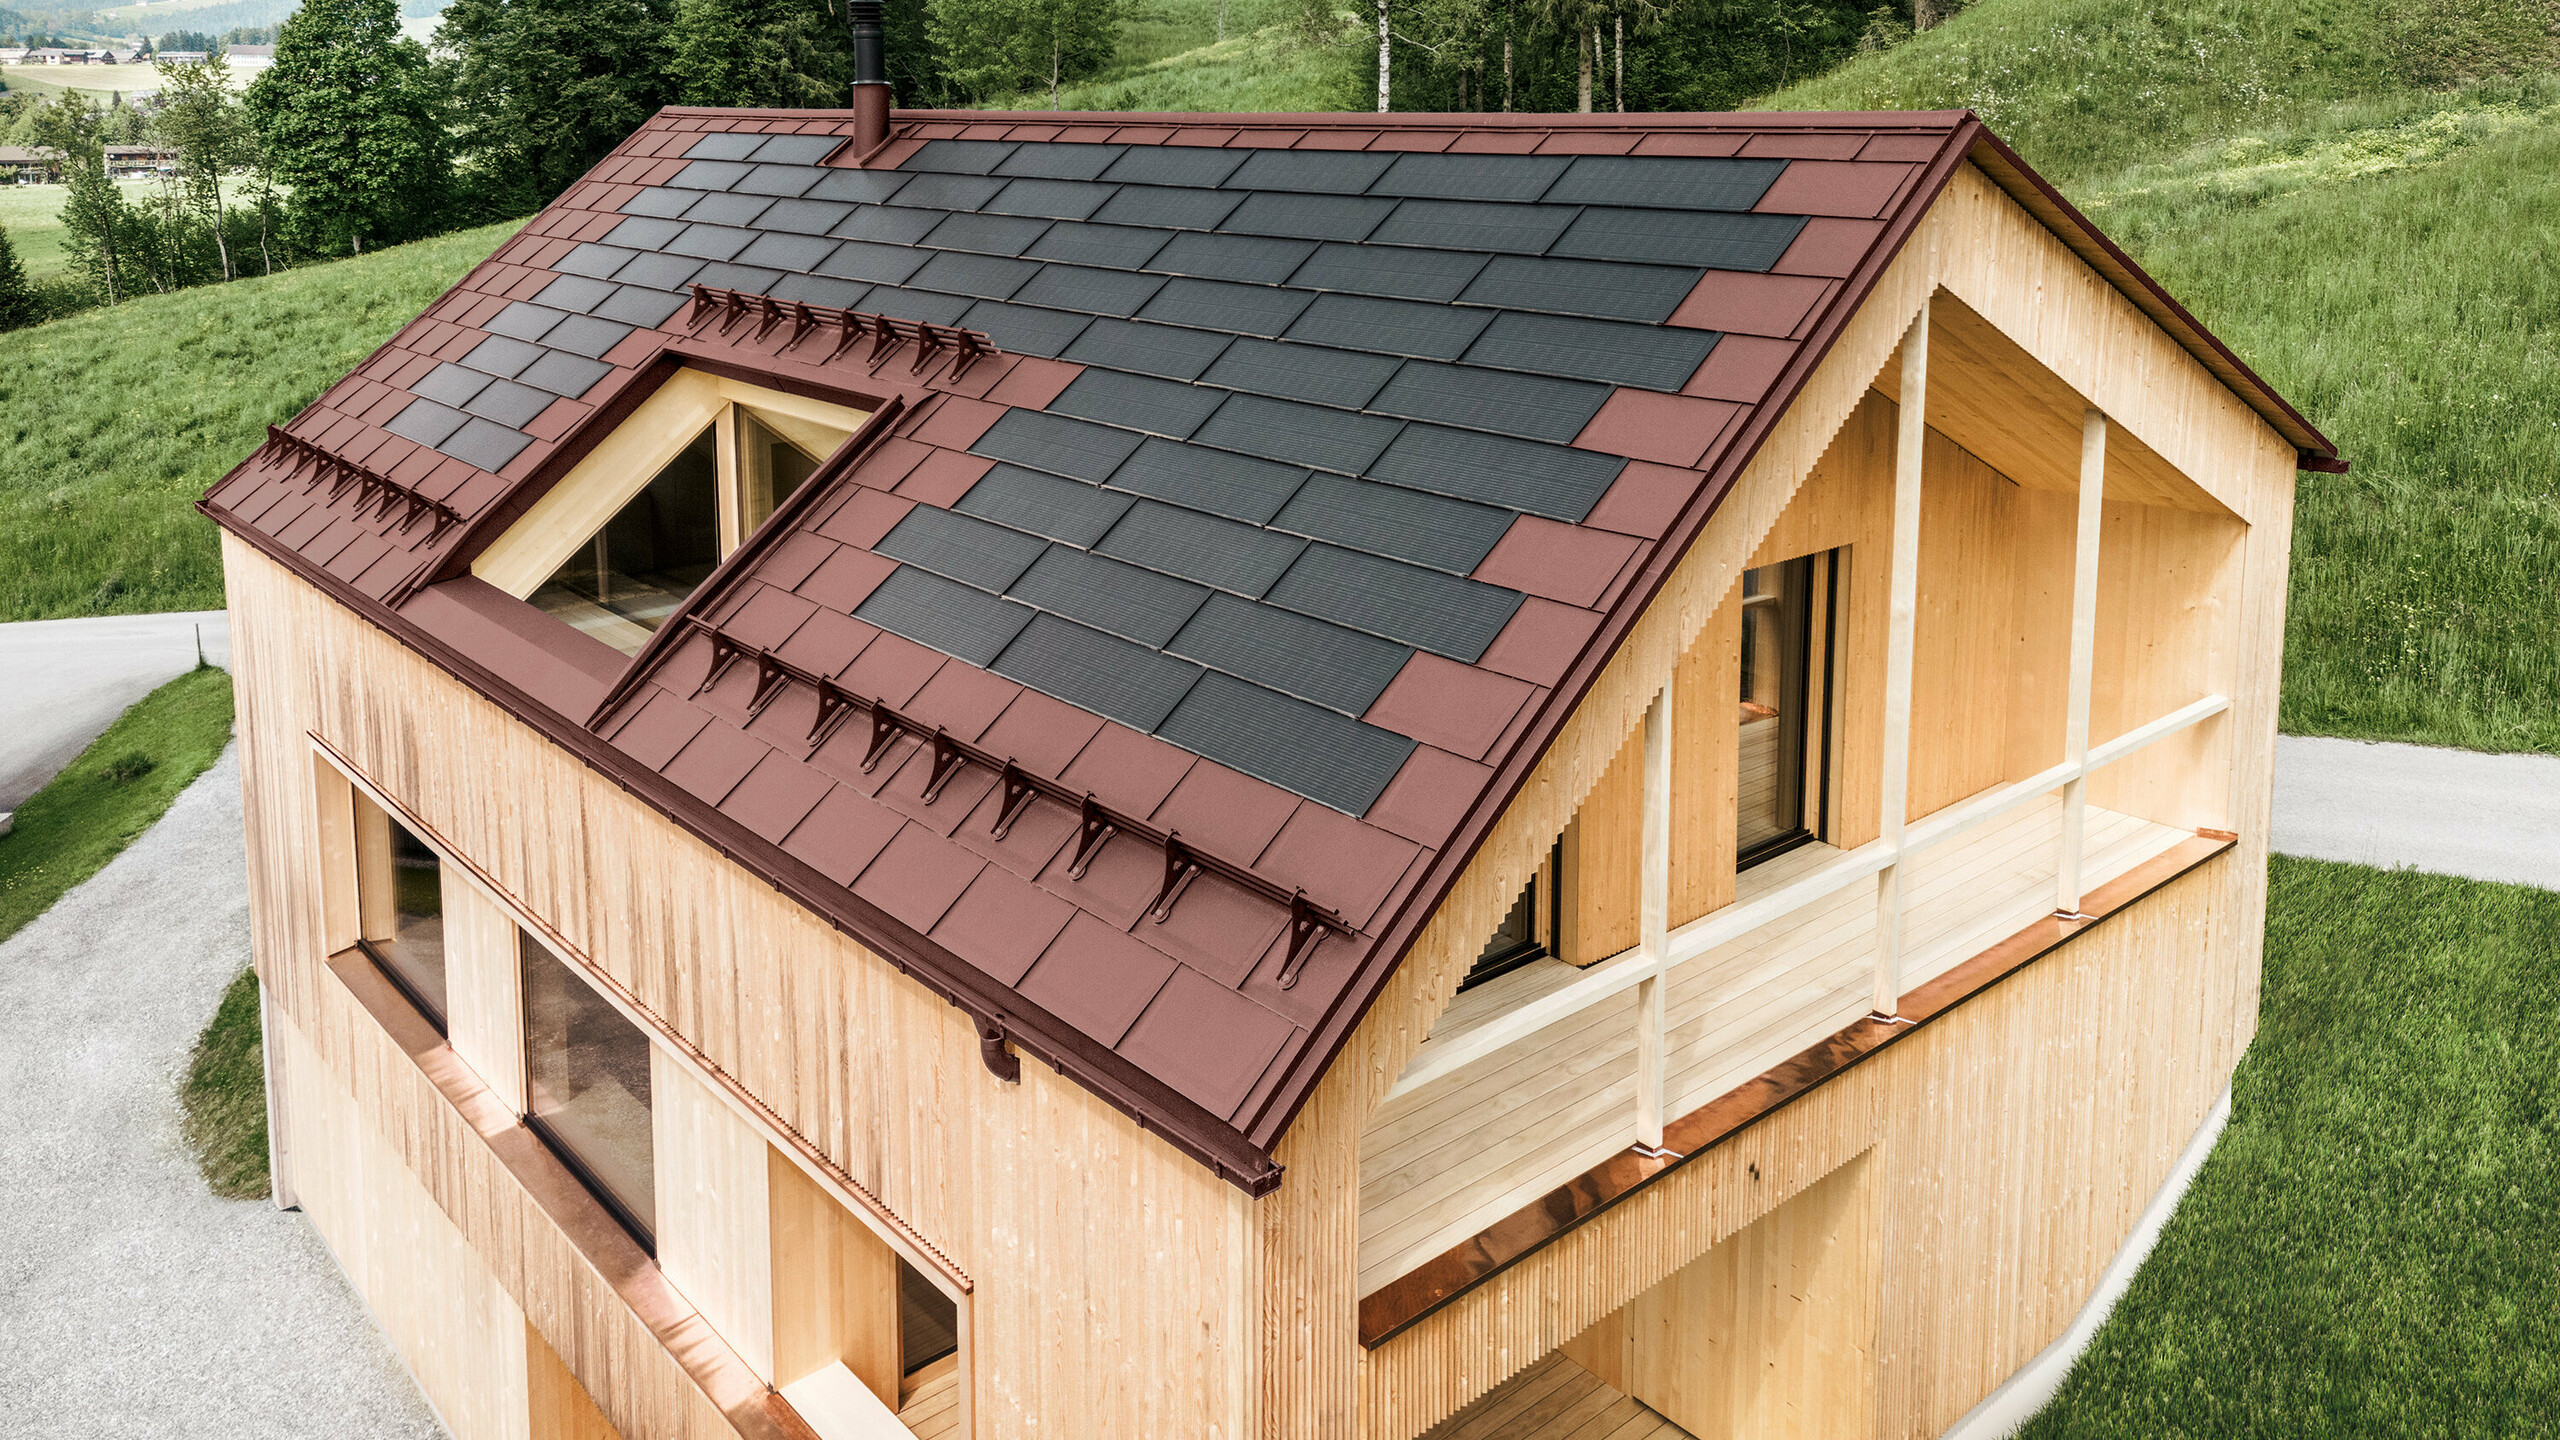 Maison individuelle située dans la localité autrichienne d'Egg, avec le panneau solaire de toiture PREFA et le panneau de toiture R.16 en rouge oxydé, combinés à une façade en bois